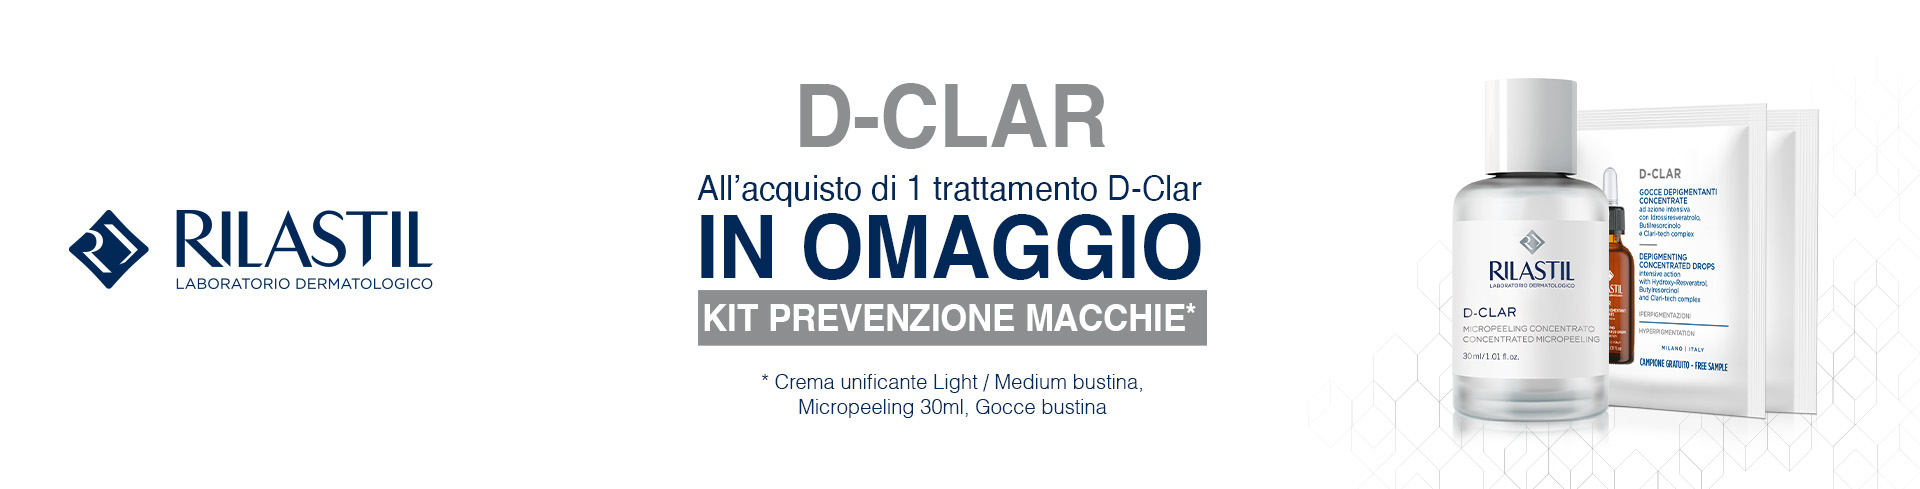 banner promozionale Rilastil D-Clar trattamento prevenzione macchie  desktop